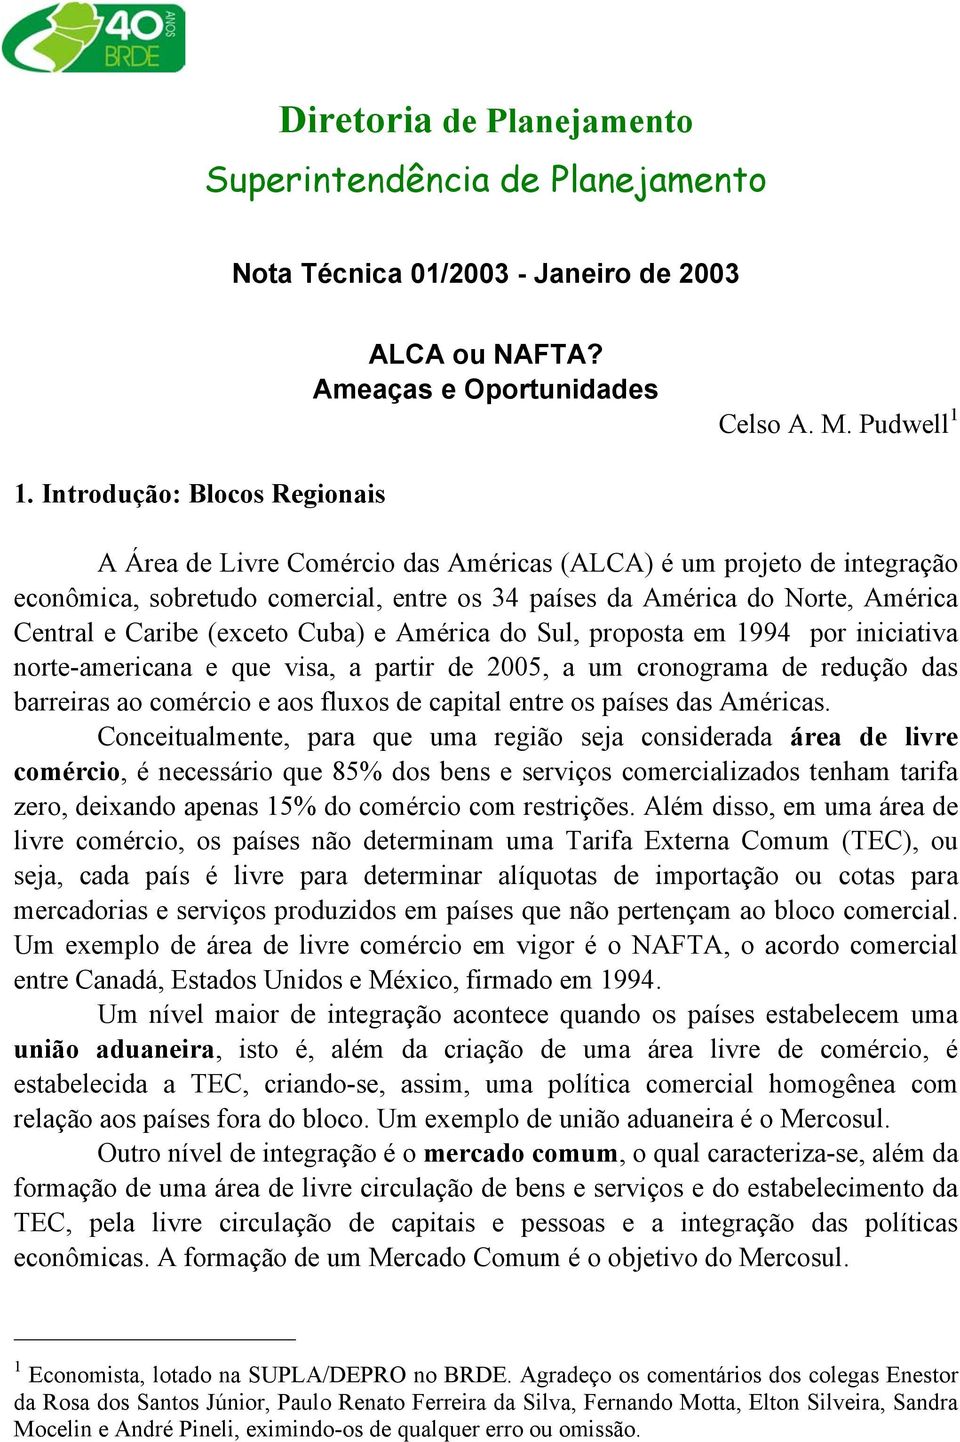 (exceto Cuba) e América do Sul, proposta em 1994 por iniciativa norte-americana e que visa, a partir de 2005, a um cronograma de redução das barreiras ao comércio e aos fluxos de capital entre os